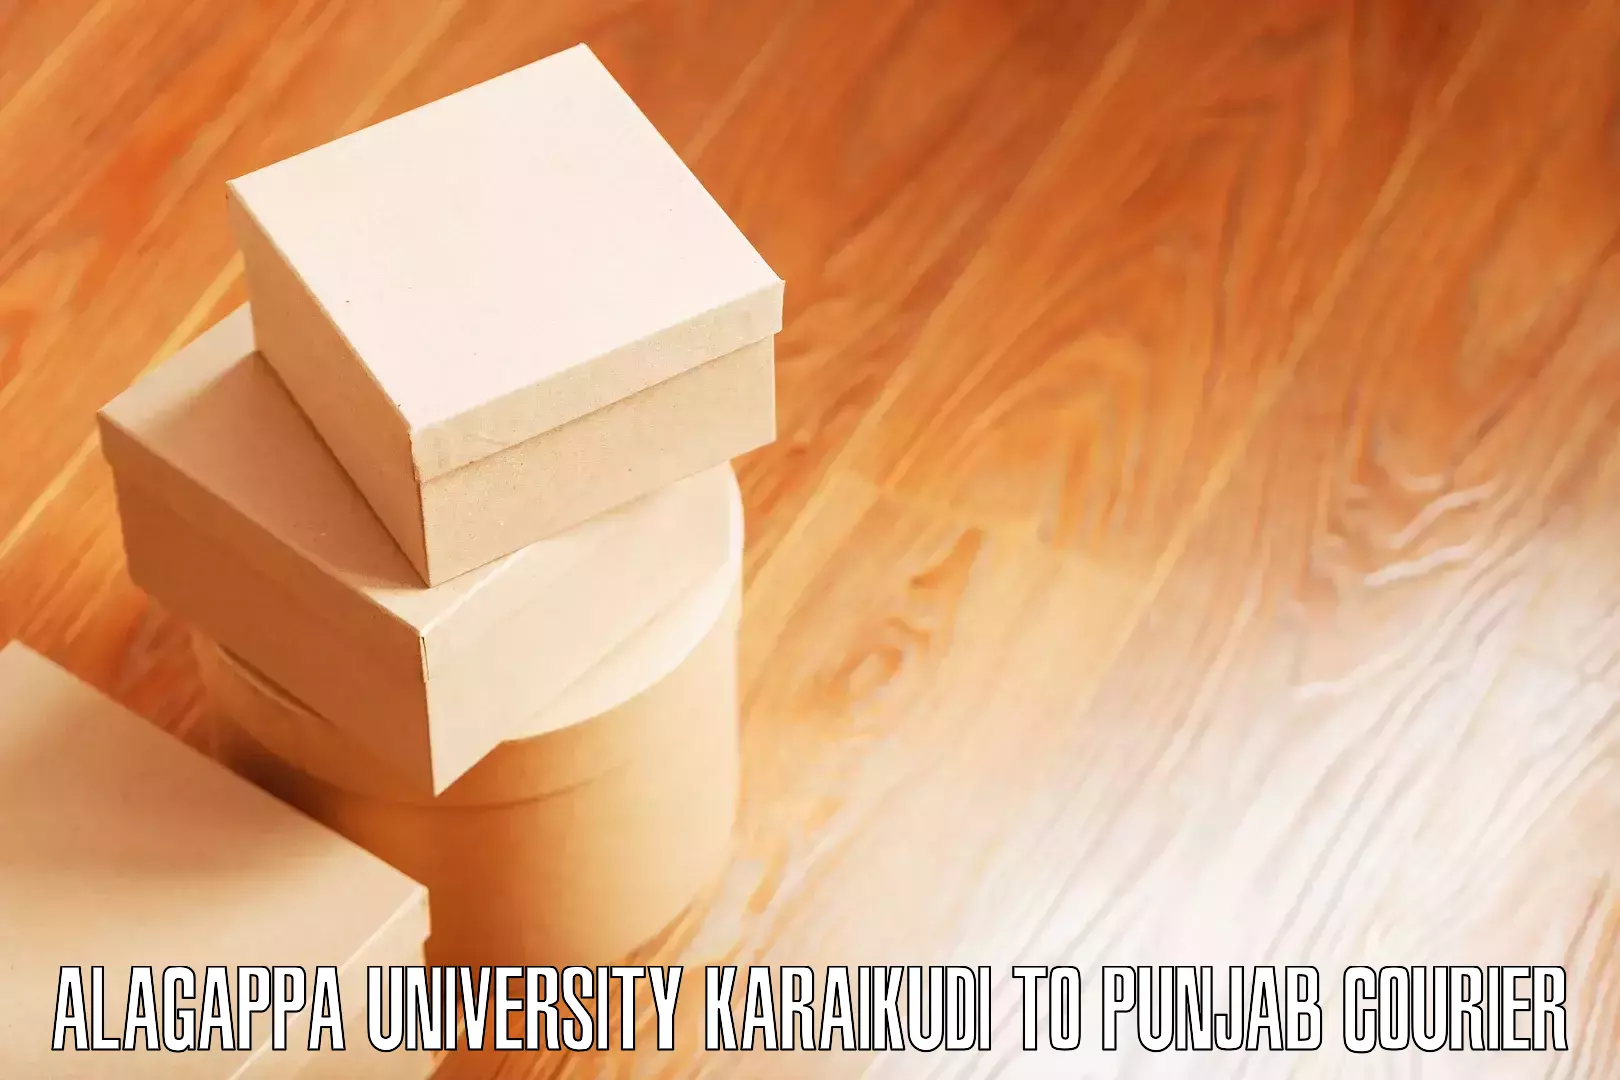 Efficient furniture movers Alagappa University Karaikudi to Punjab